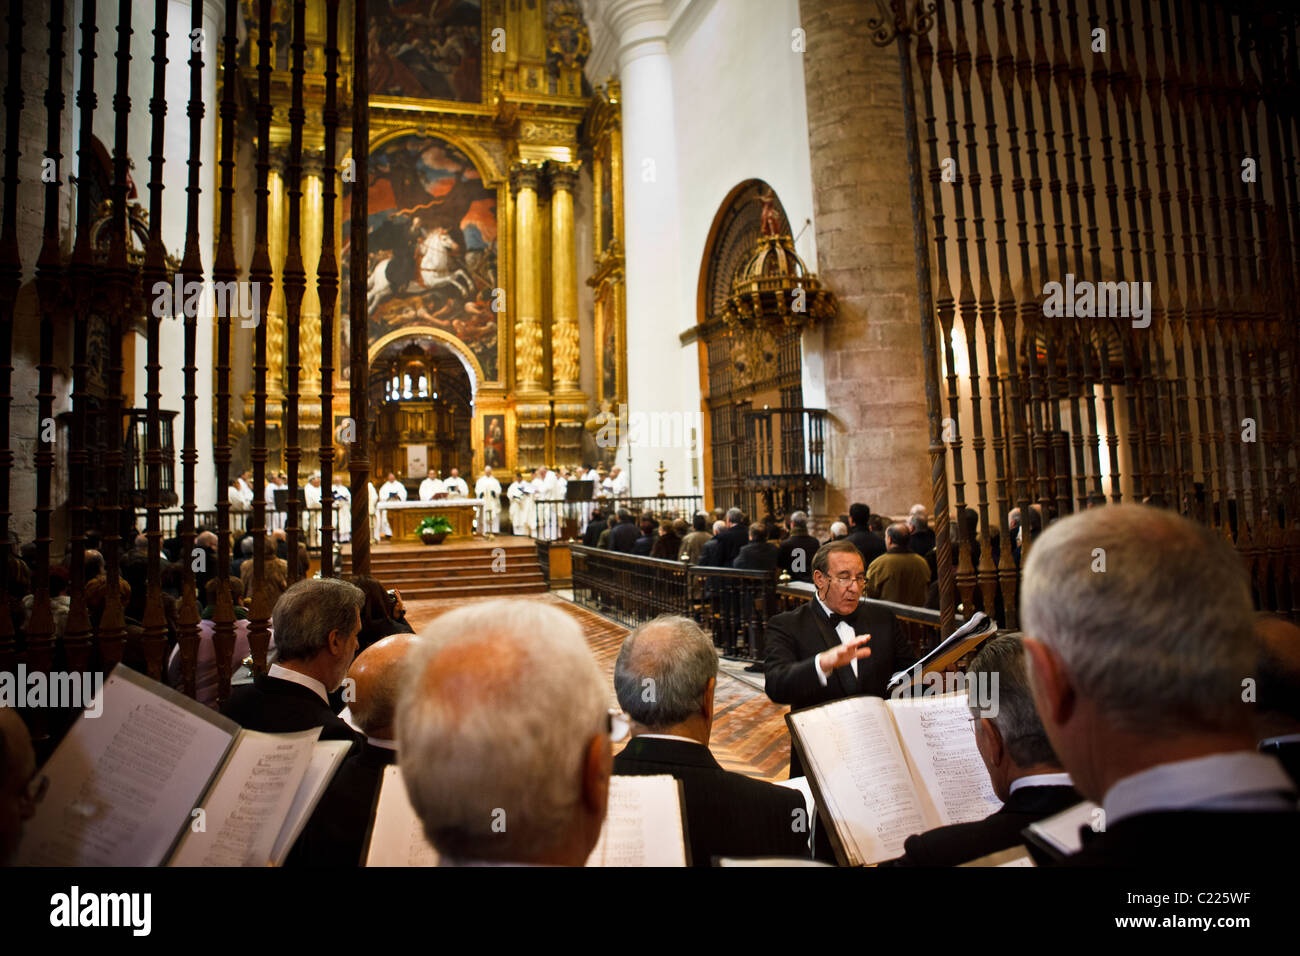 Les concerts de masse et à l'église de l'Ascension au monastère de Yuso, à San Millán de la Cogolla, La Rioja, Espagne Banque D'Images